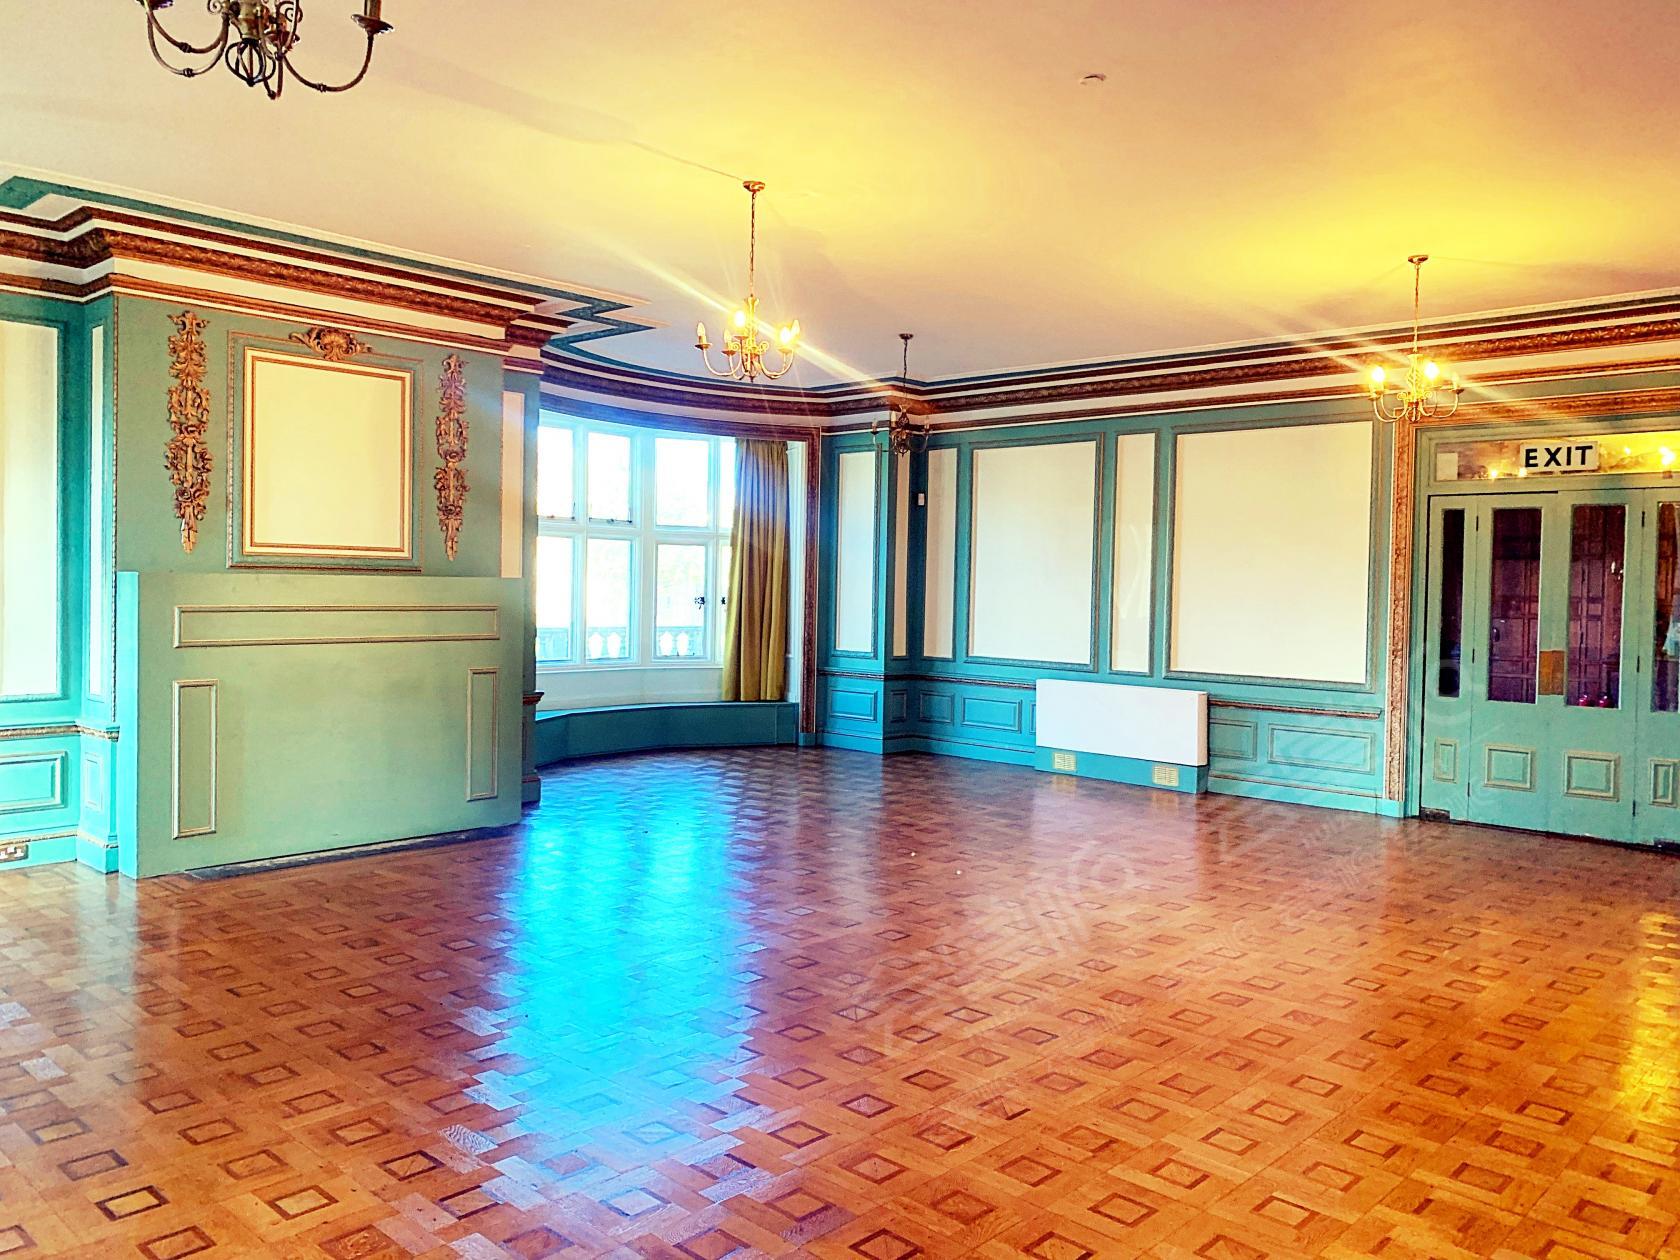 Golden Room (Ballroom)